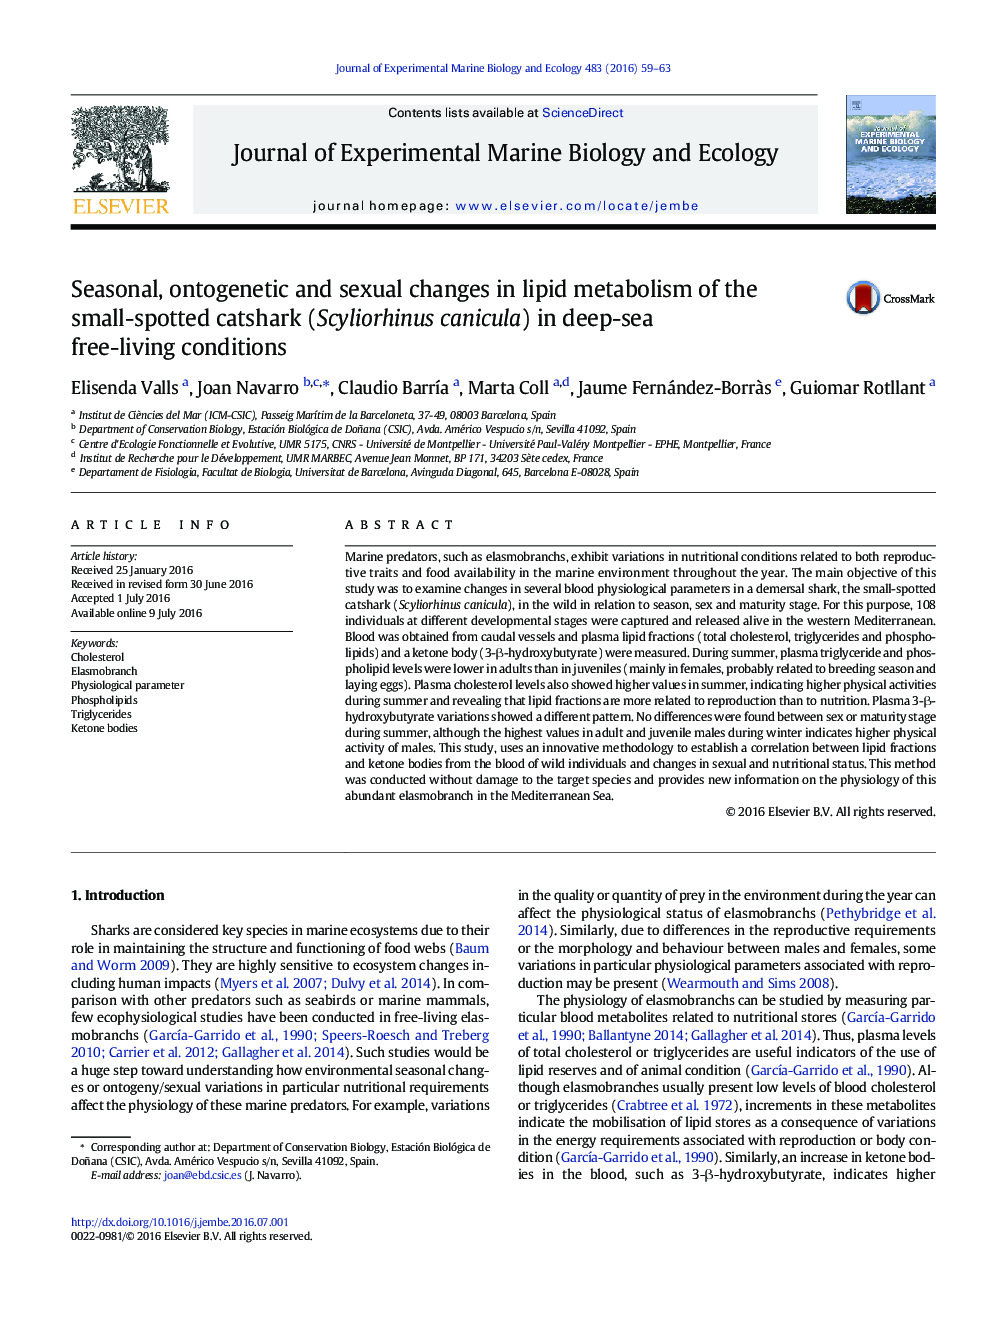 تغییرات فصلی، آنتوگنینیک و جنسی در متابولیسم لیپید کاسکاک کوچک (Scyliorhinus canicula) در شرایط زندگی آزاد عمق دریا 